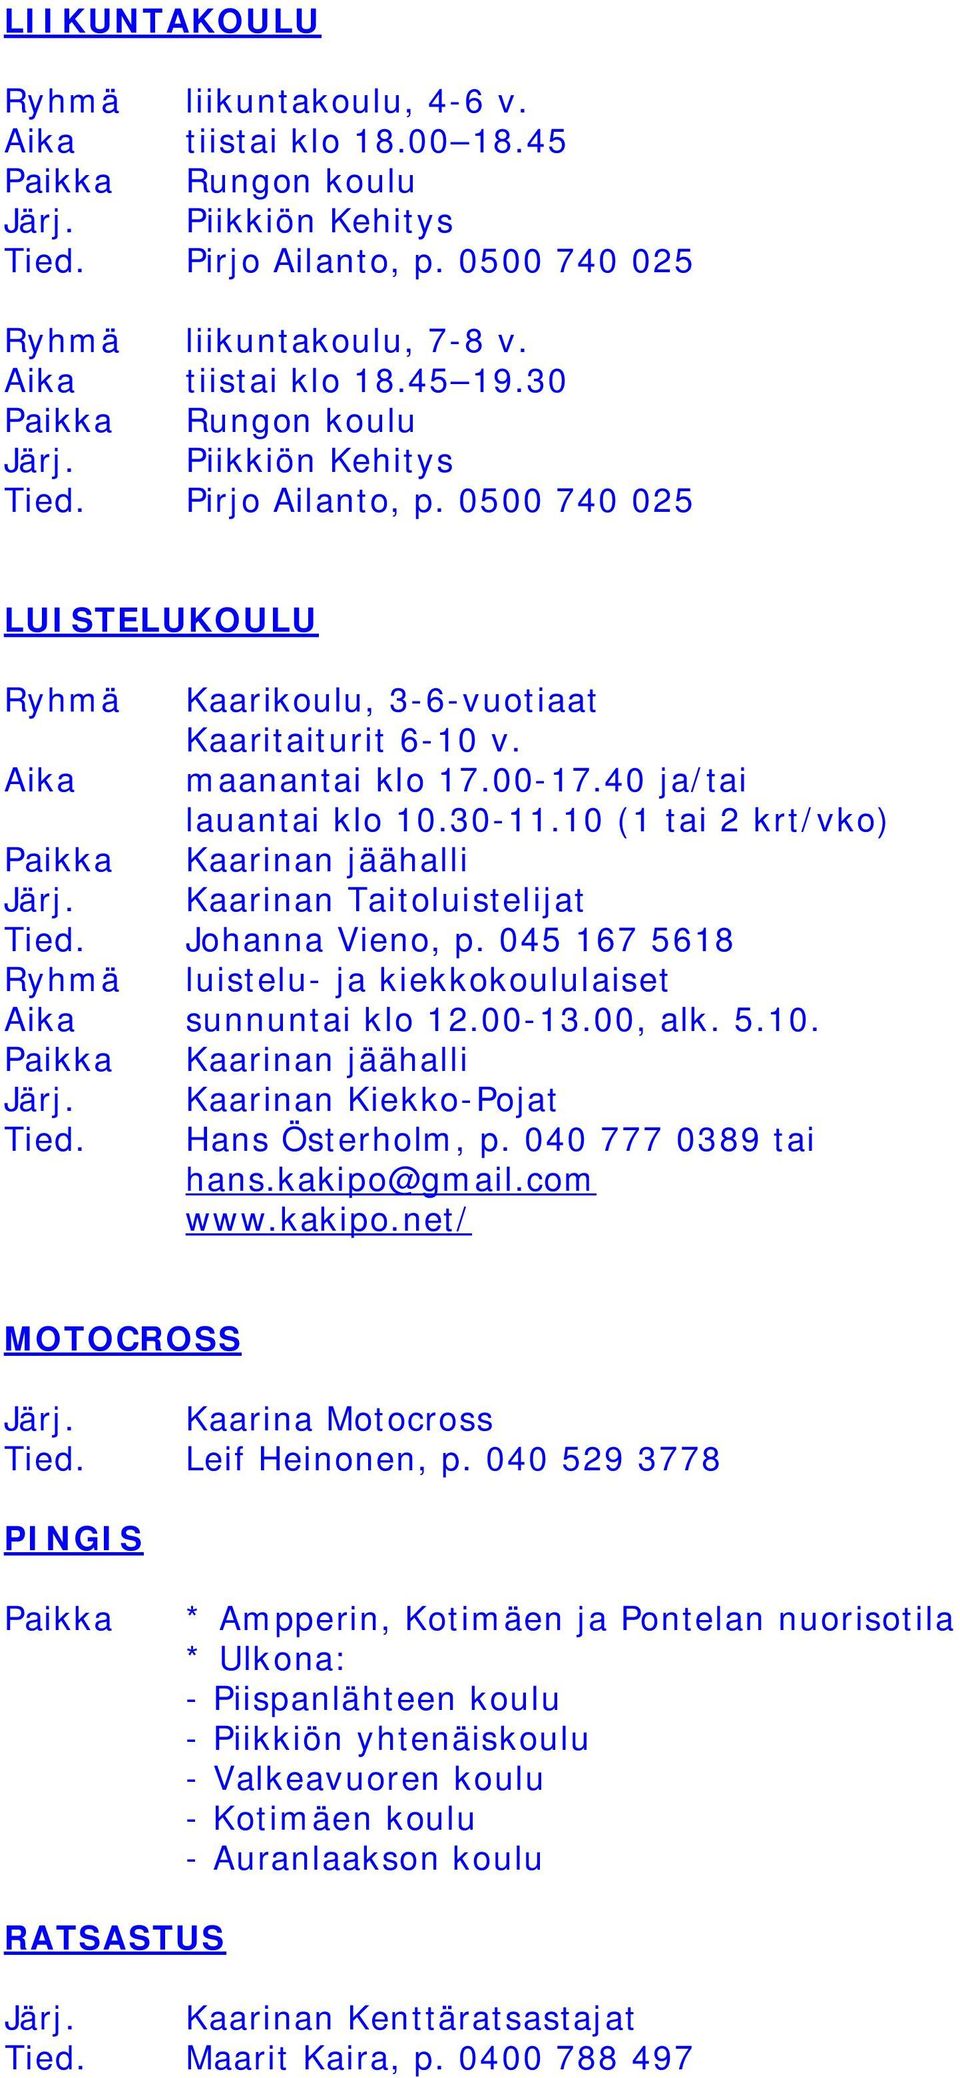 40 ja/tai lauantai klo 10.30-11.10 (1 tai 2 krt/vko) Paikka Kaarinan jäähalli Järj. Kaarinan Taitoluistelijat Tied. Johanna Vieno, p.